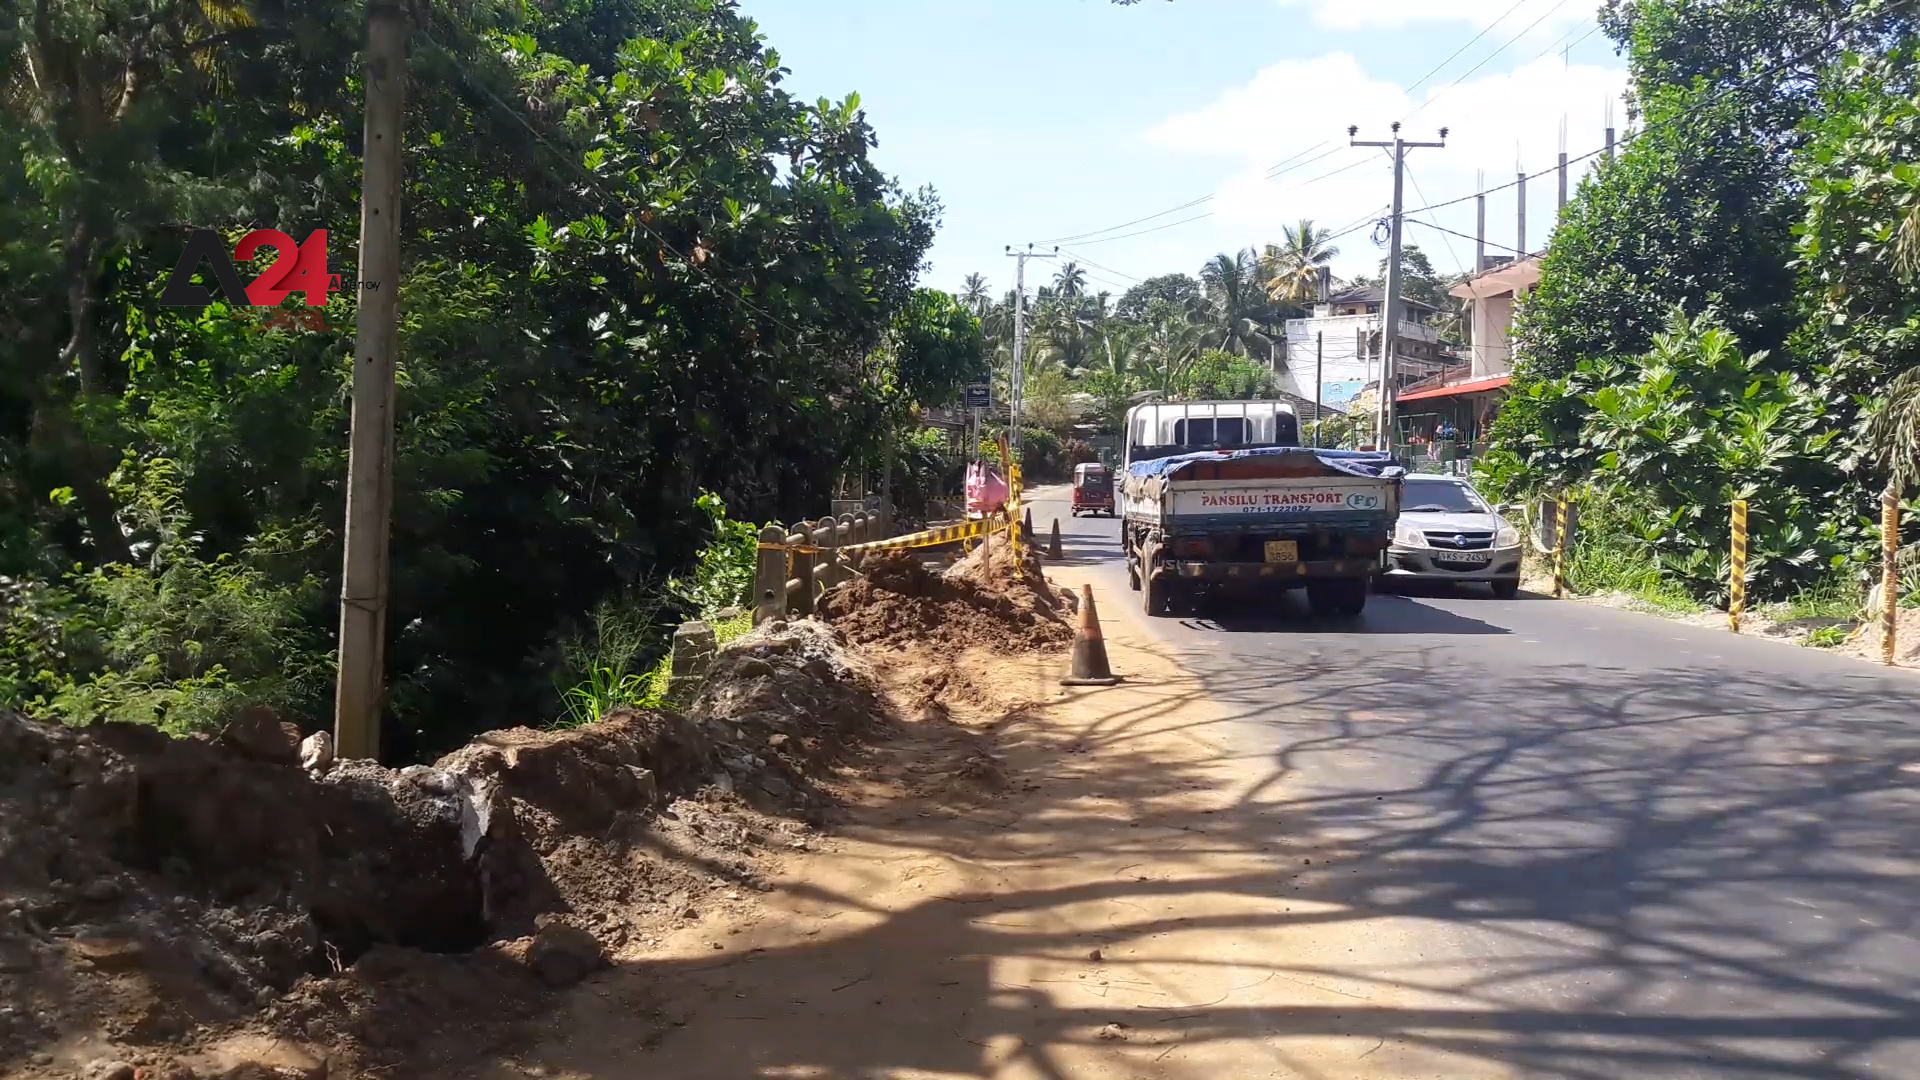 سريلانكا – مواصلة أعمال التنمية في سريلانكا خاصة قطاع البناء رغم جائحة كورونا